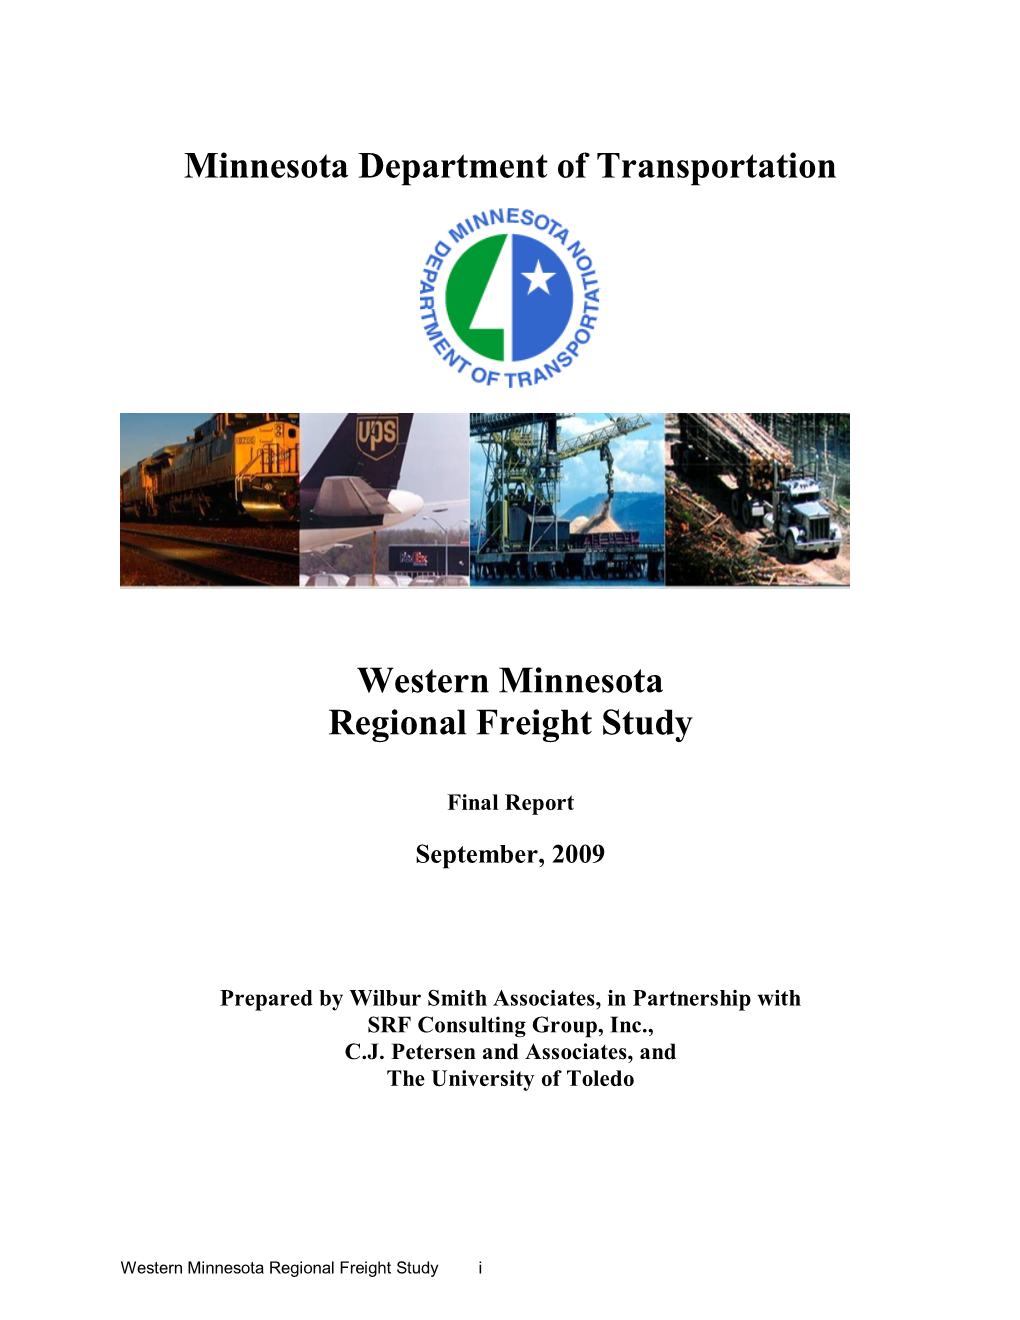 Western Minnesota Regional Freight Study